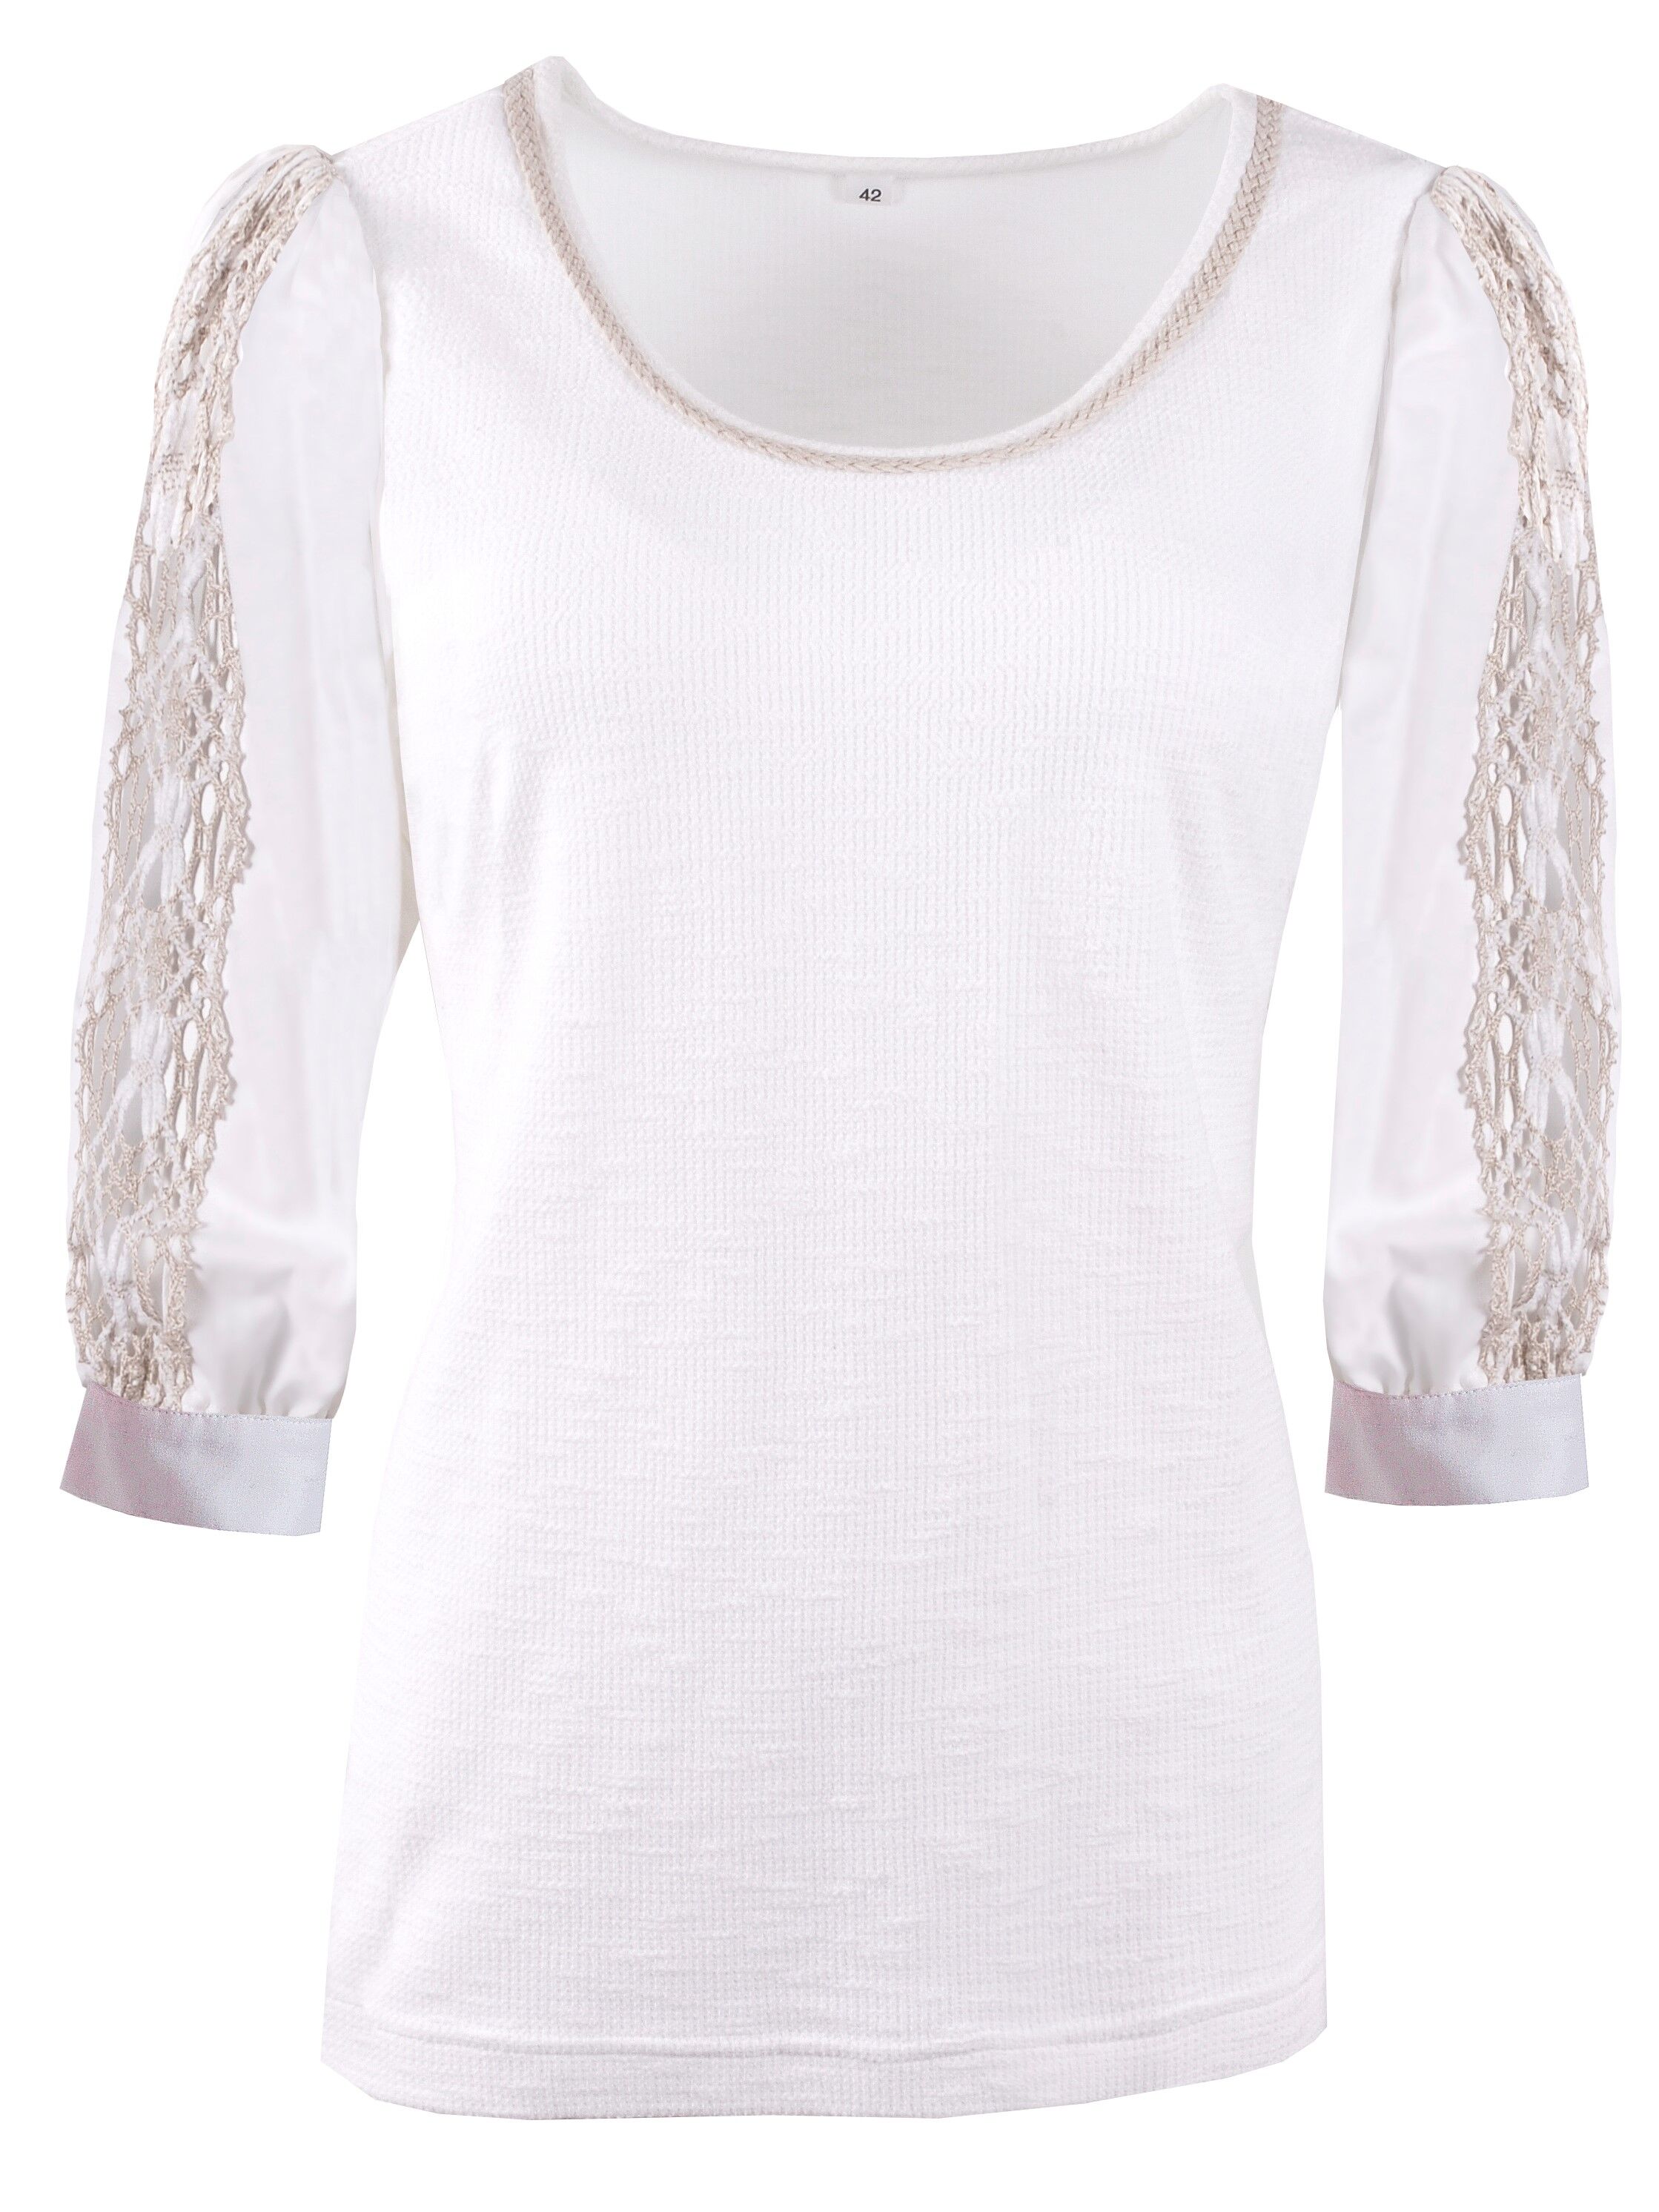 Baumwolle Trachtenshirt Damen T-Shirt 3/4 Arm Langarm Weiß-Beige